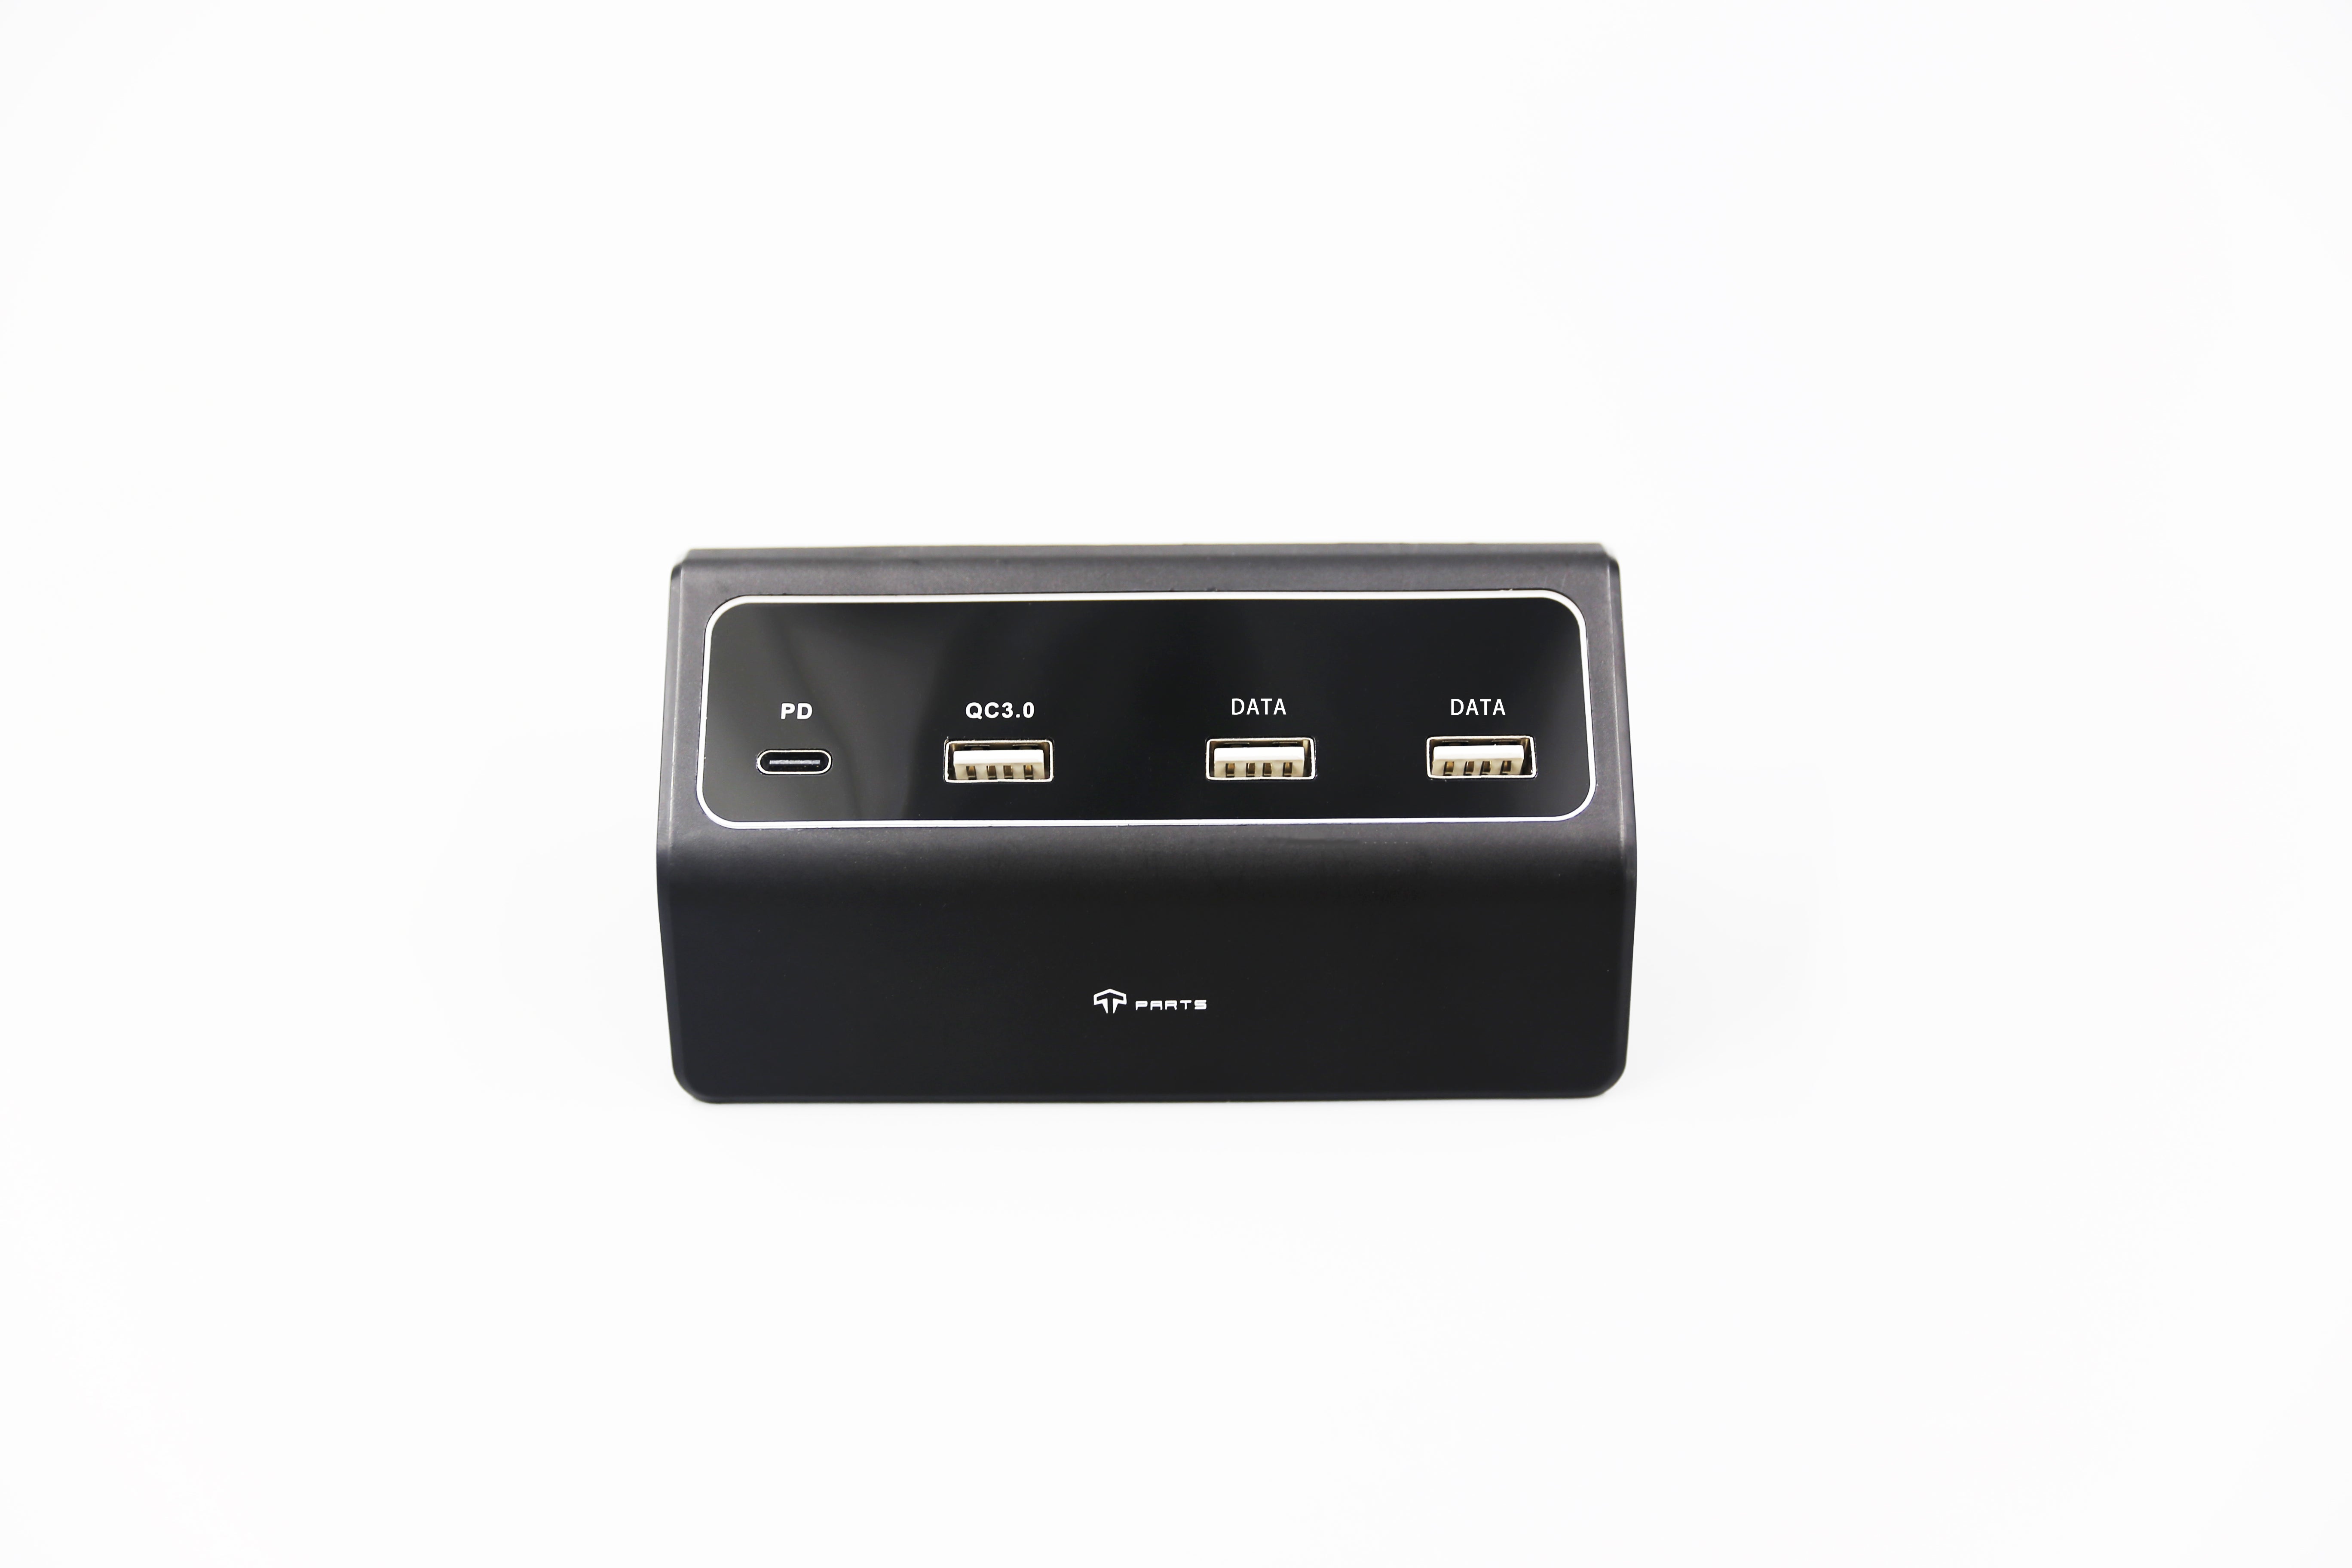 USB-Hub mit Center-Konsole Organizer-Tablett für Modell Y/3 Unterstützung  27W Schnell ladung – Arcoche